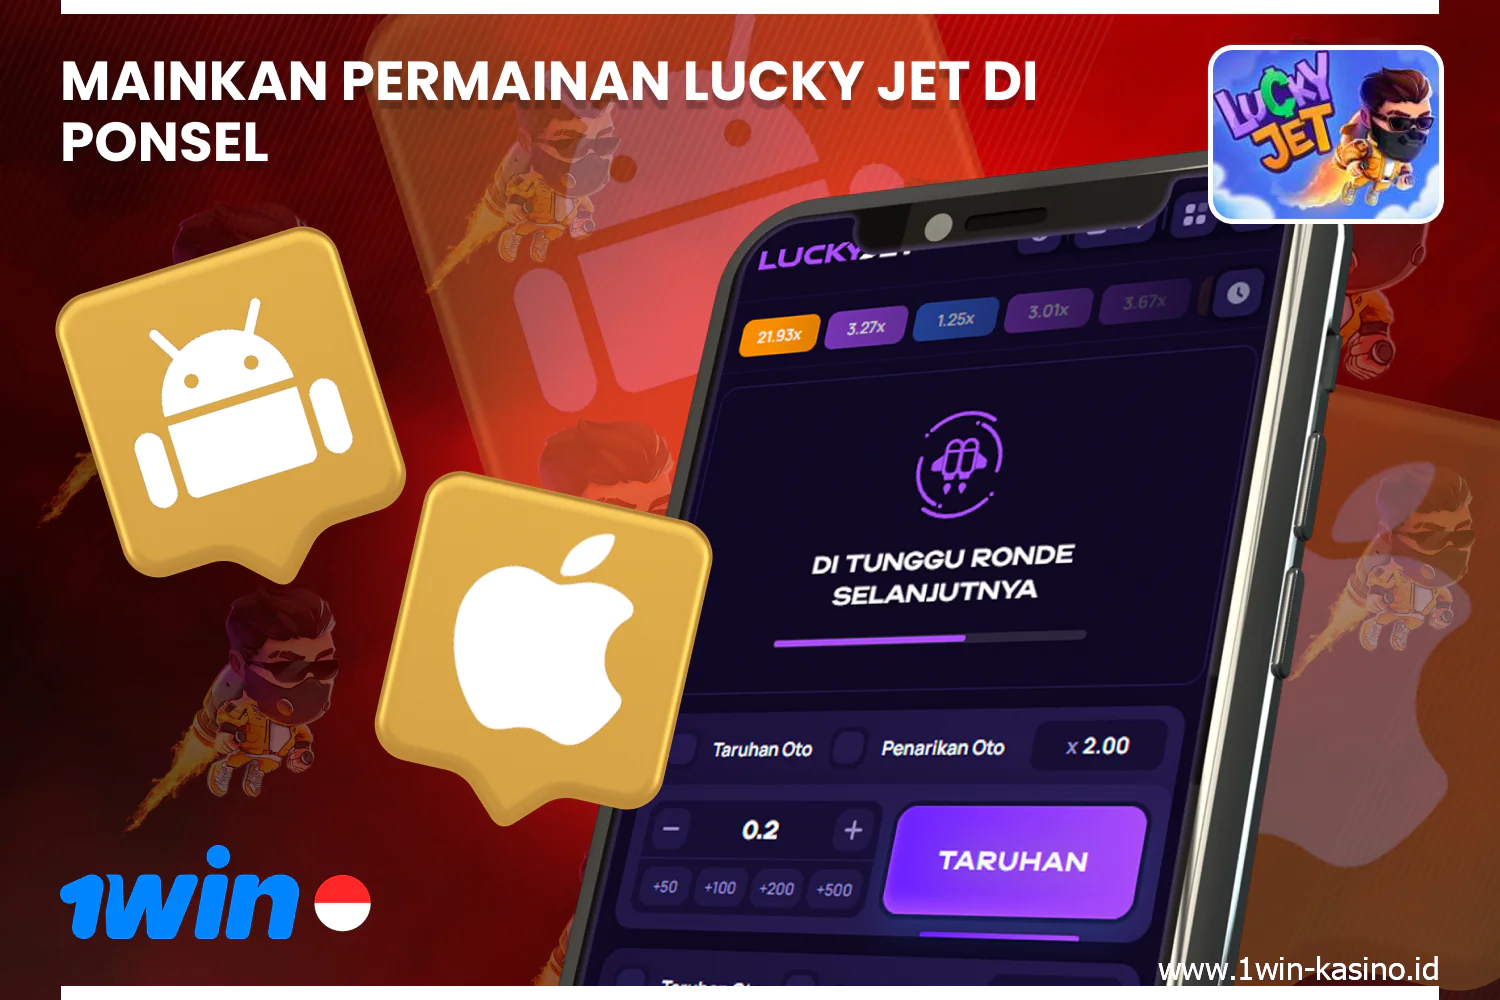 Untuk memainkan 1win Lucky Jet di ponsel cerdas Anda, Anda perlu mengunduh aplikasi dari situs web 1win